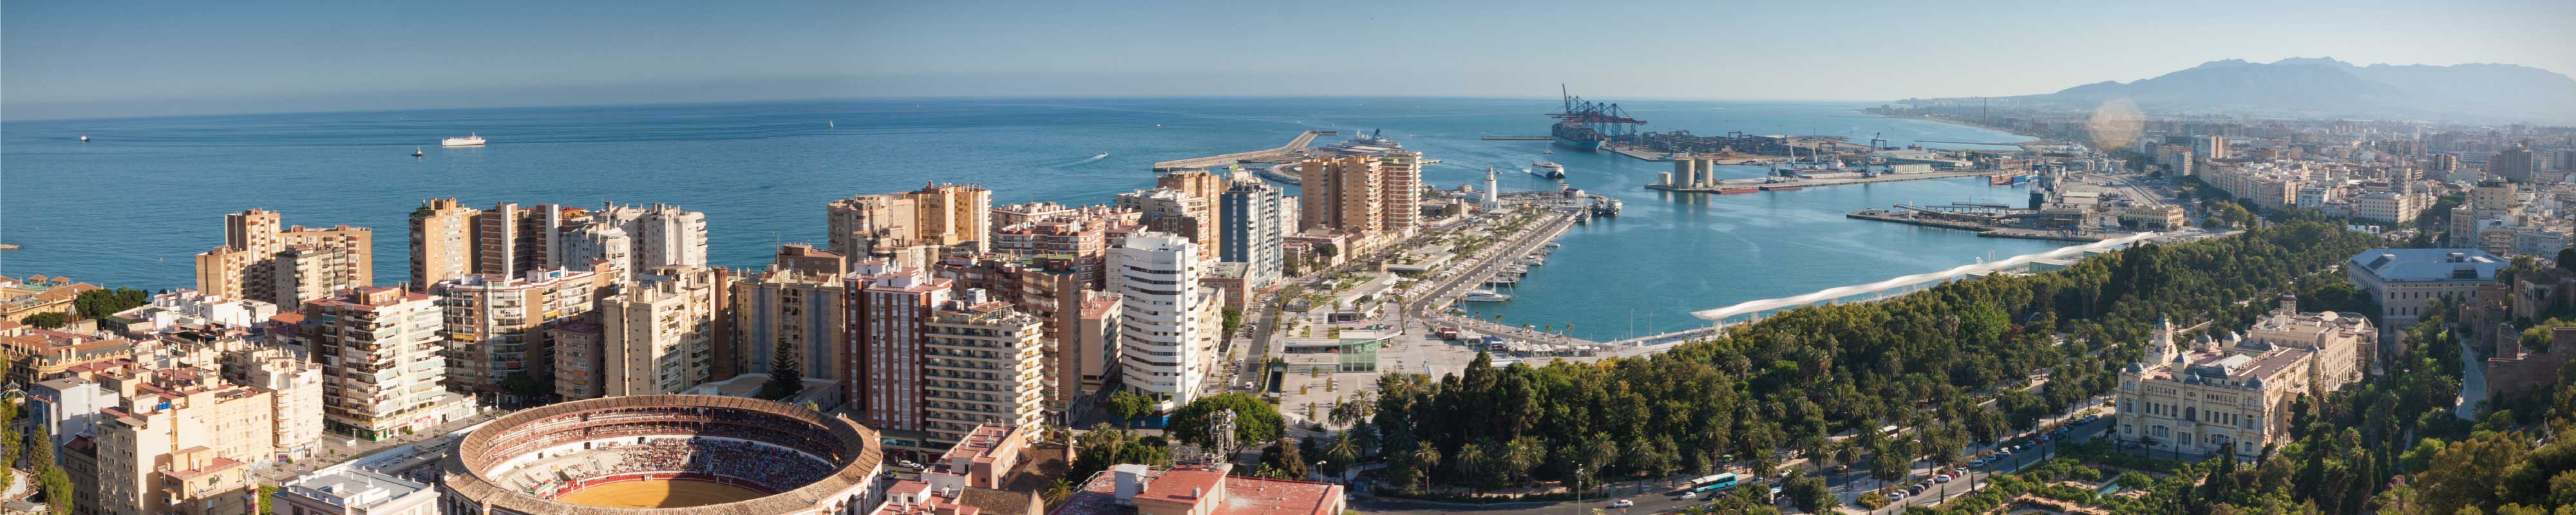 Gepäckaufbewahrung | Stadtzentrum von Malaga in Málaga - Nannybag